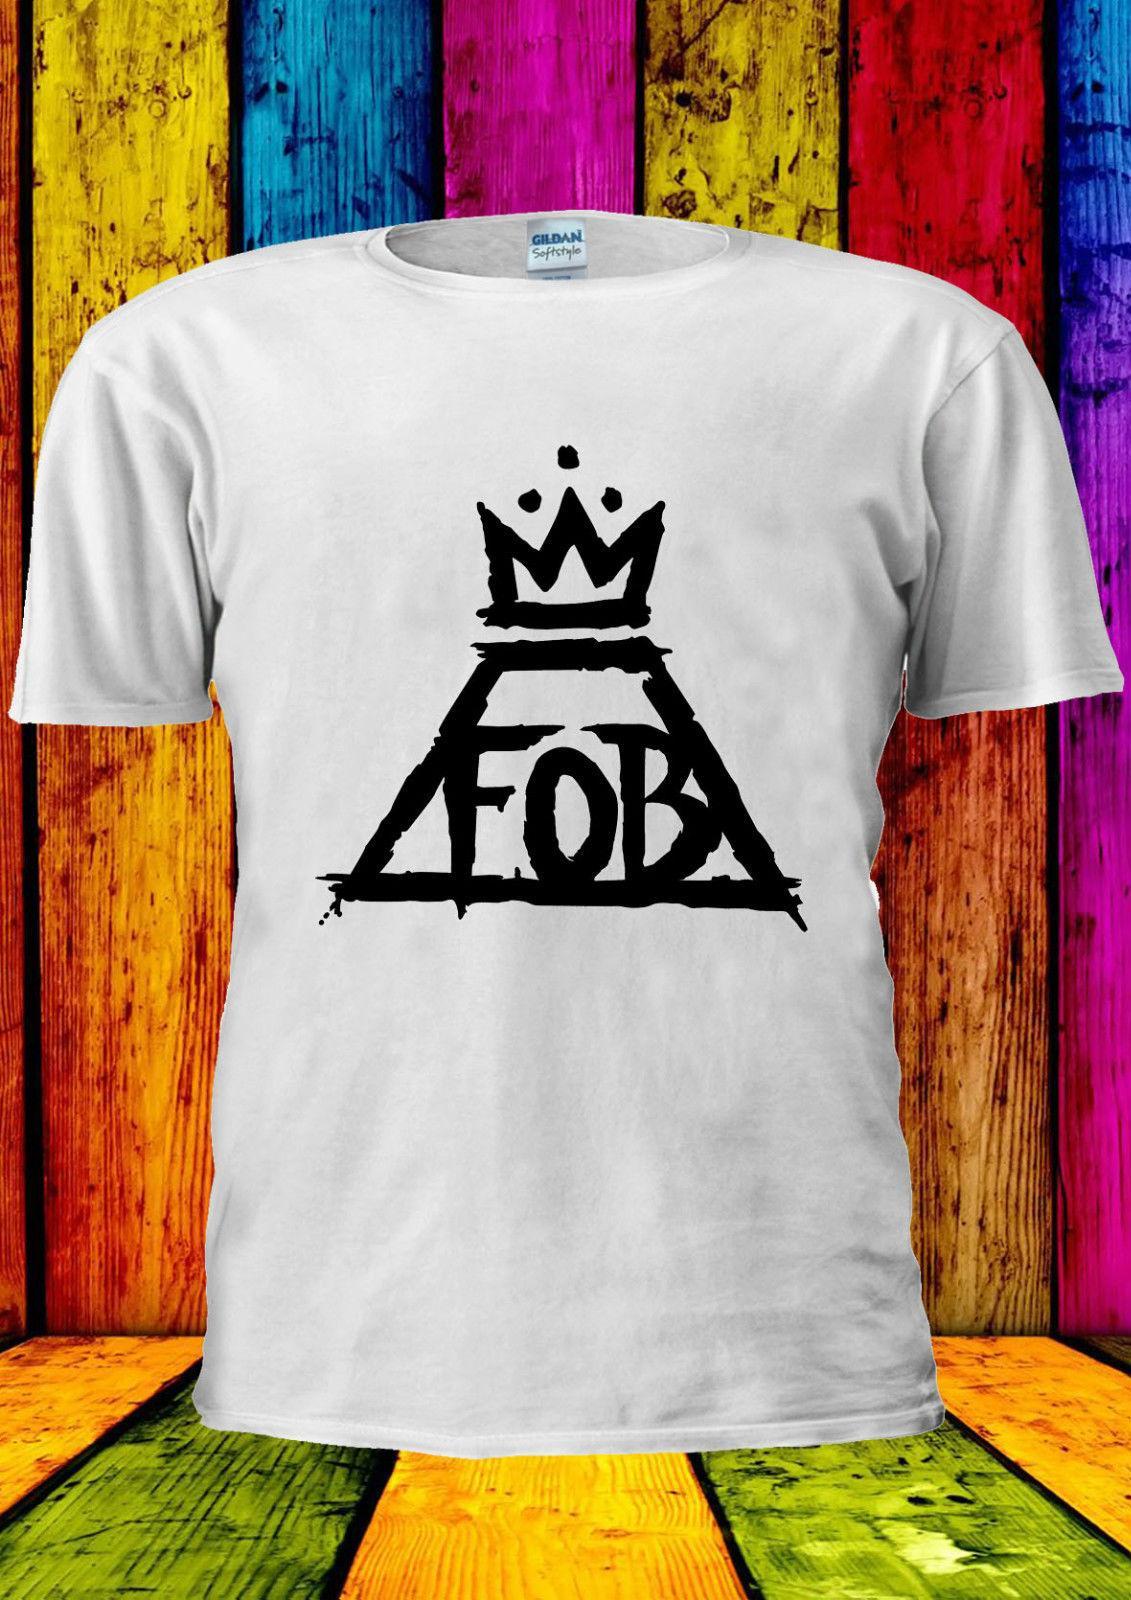 FOB Crown Logo - FALL OUT BOY FOB Crown Logo Music T Shirt Vest Tank Top Men Women ...